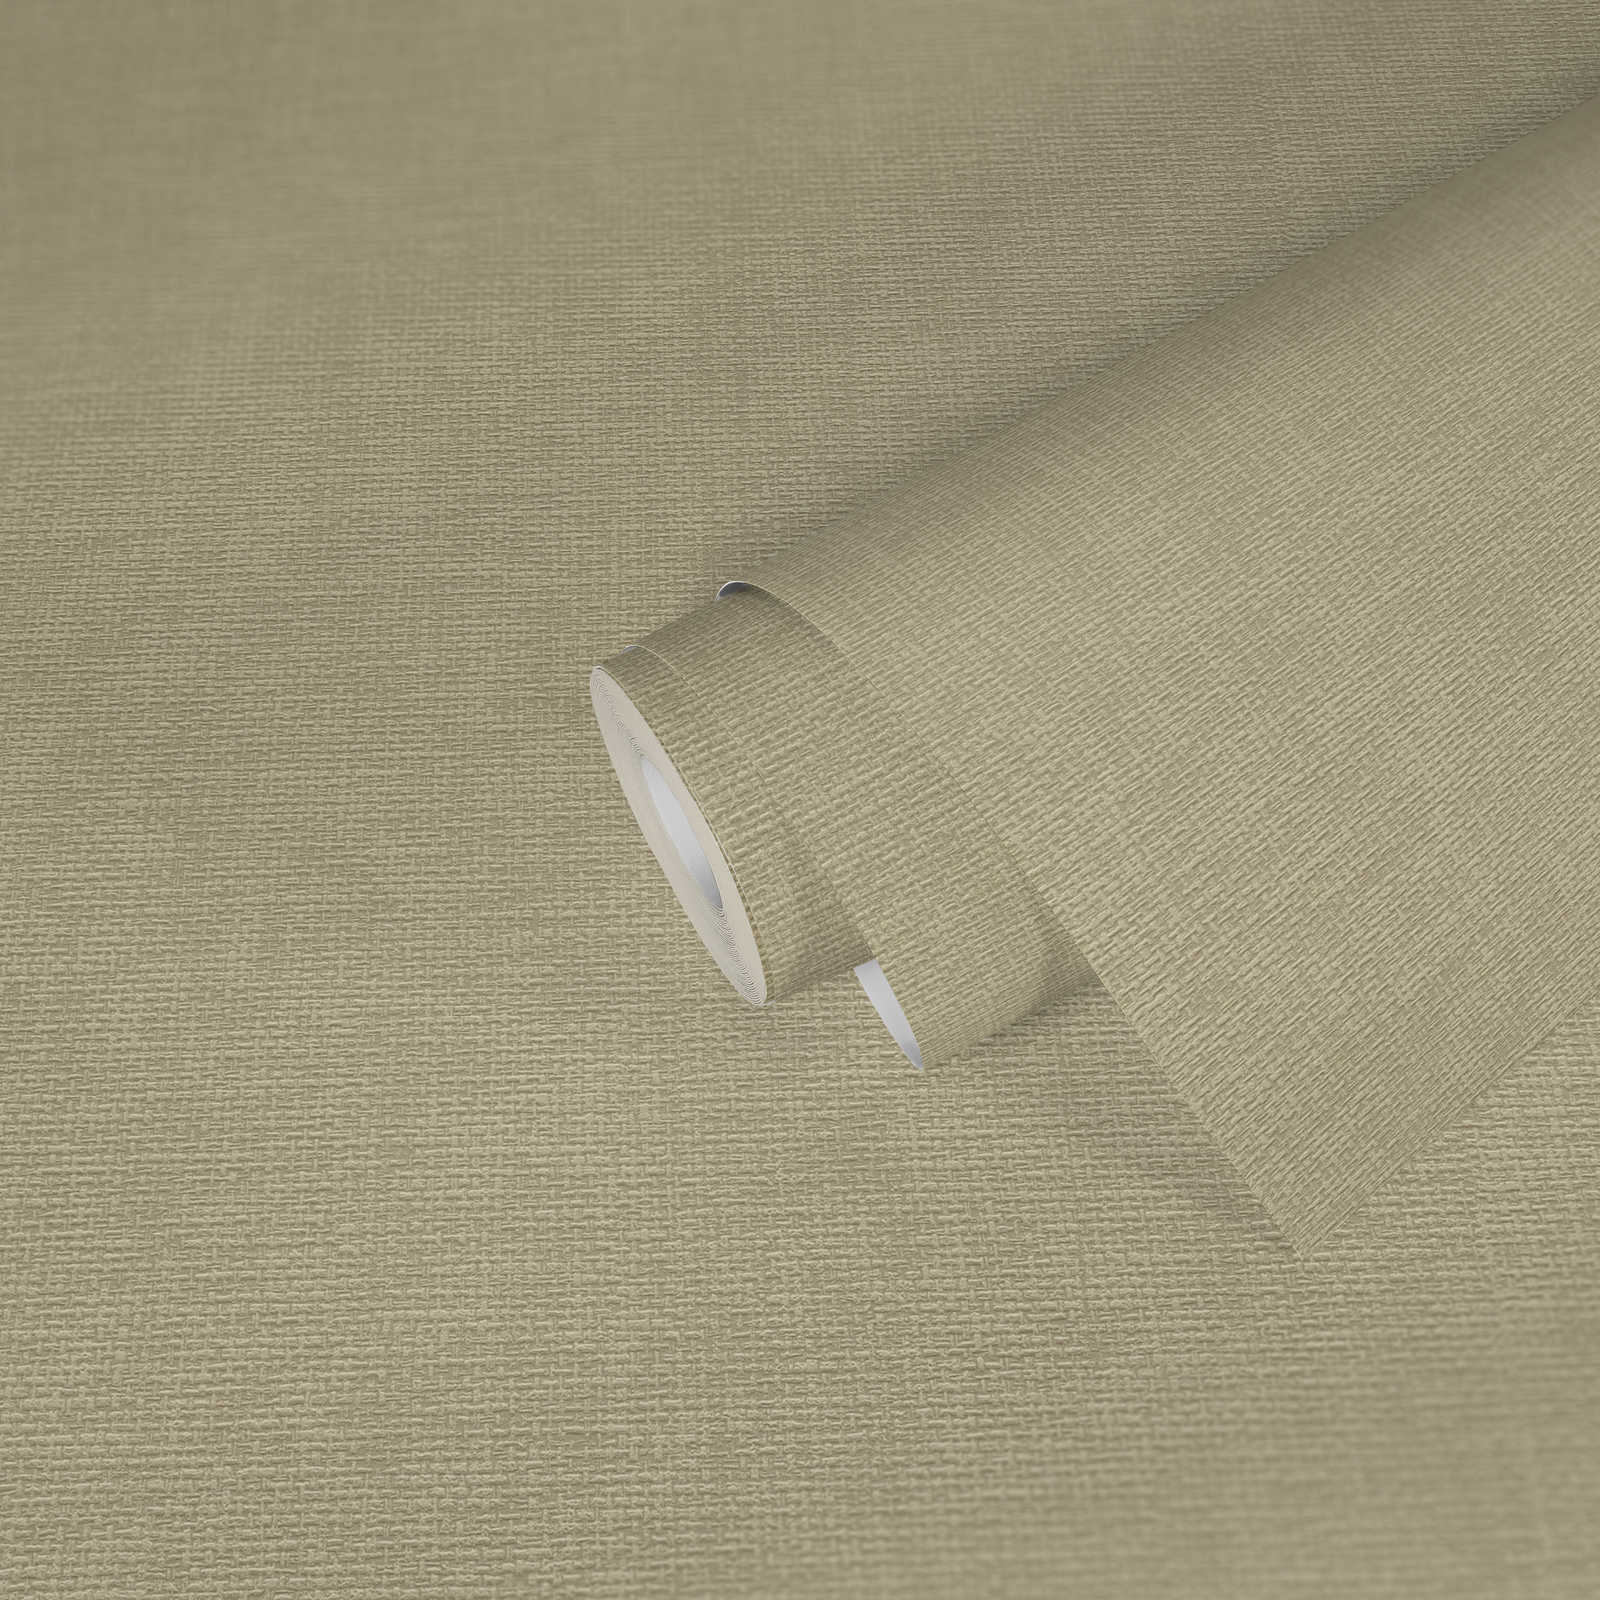             Textildesign Tapete mit Gewebestruktur – Beige, Grau
        